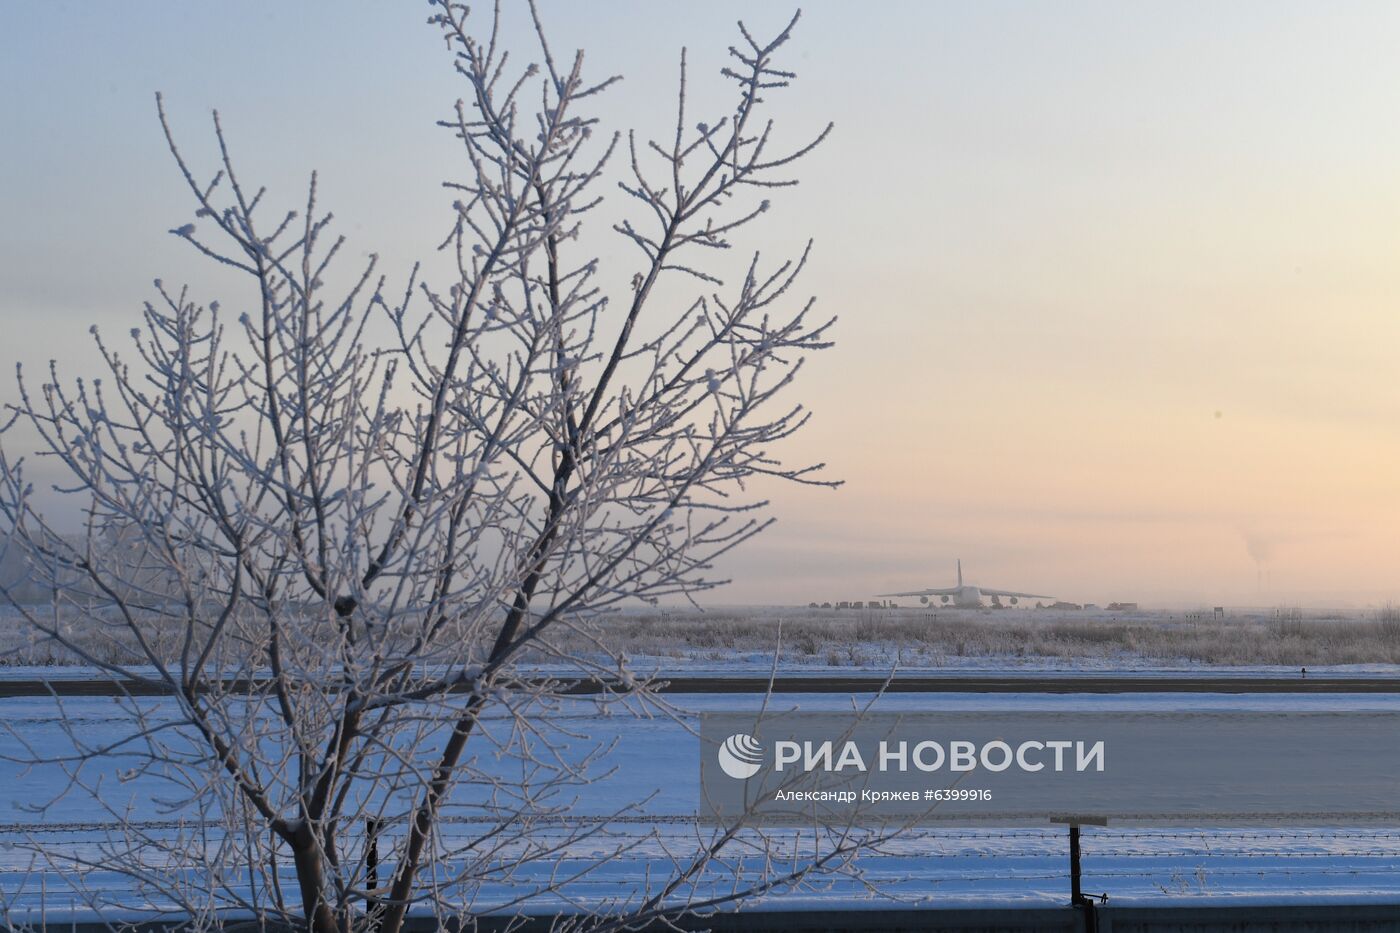 Буксировка самолета Ан-124 в Новосибирске